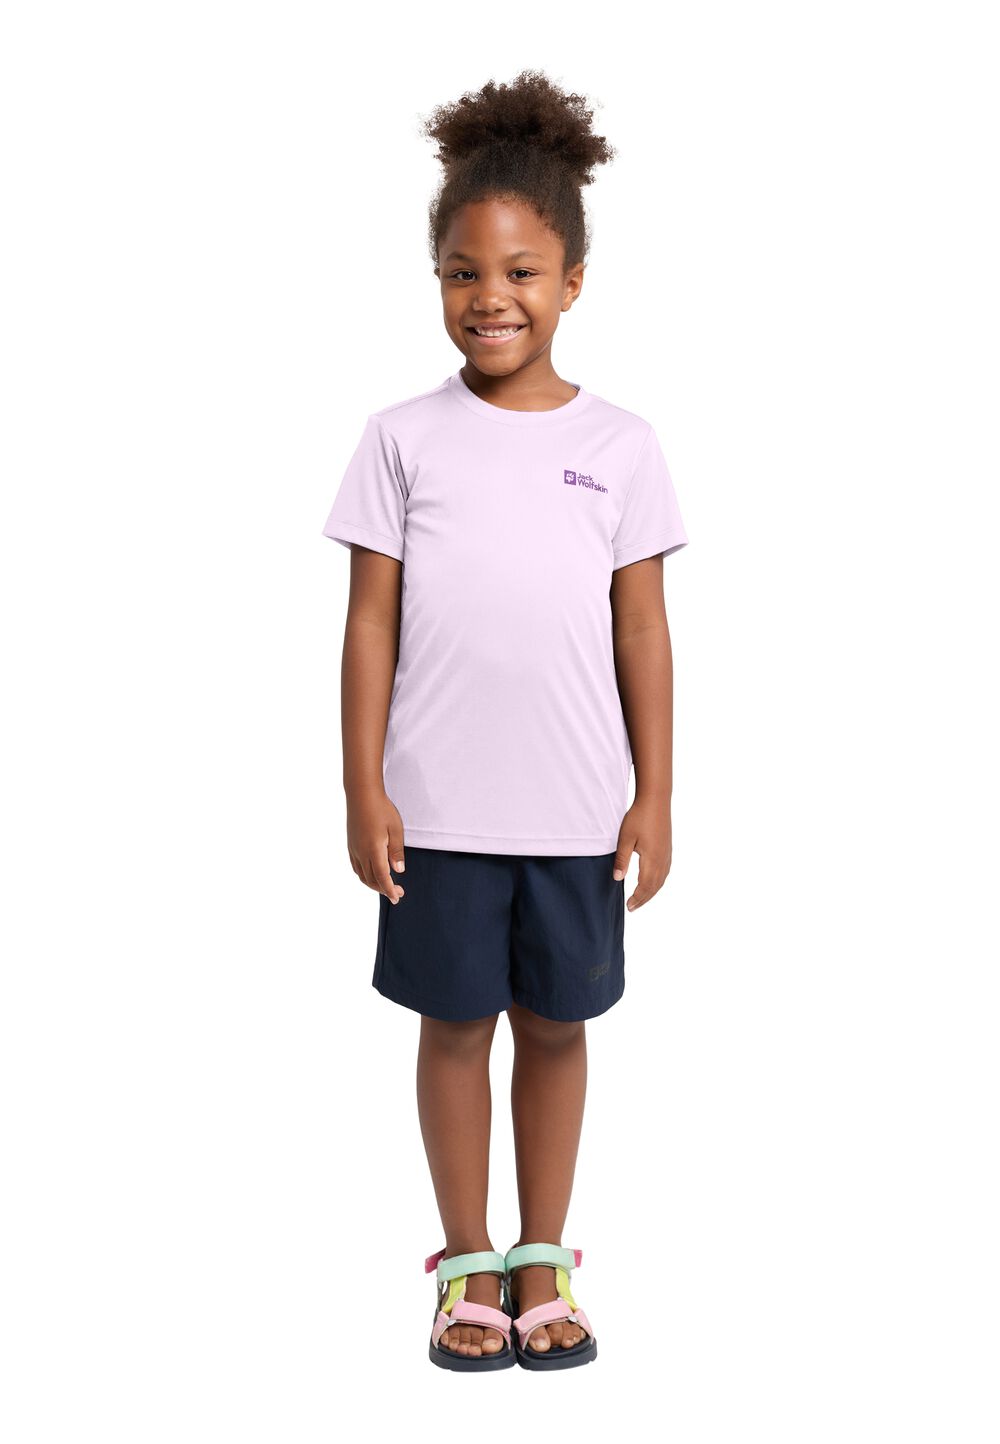 Jack Wolfskin Active Solid T-Shirt Kids Functioneel shirt Kinderen 140 pale lavendar pale lavendar